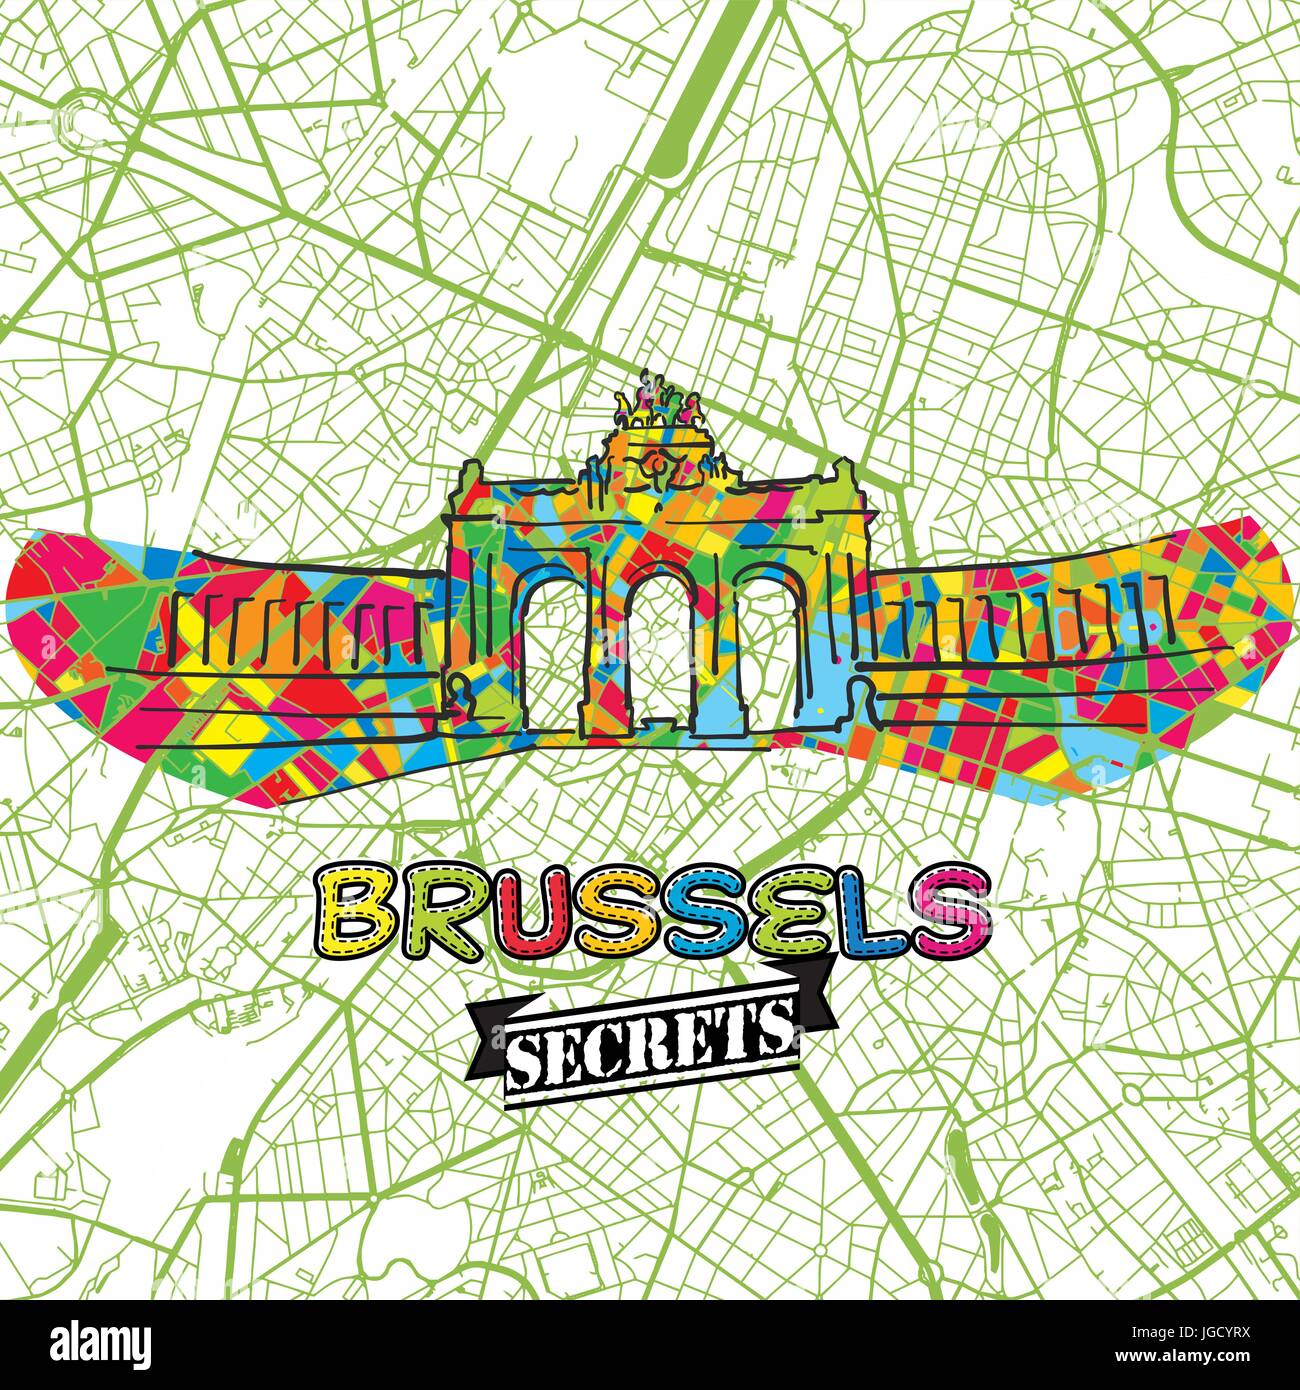 Brüssel Reise Geheimnisse Art Map für die Zuordnung von Experten und Reiseführer. Handgemachte Stadt Logo, Typo-Abzeichen und Hand gezeichnete Vektor-Bild an der Spitze sind gruppiert eine Stock Vektor